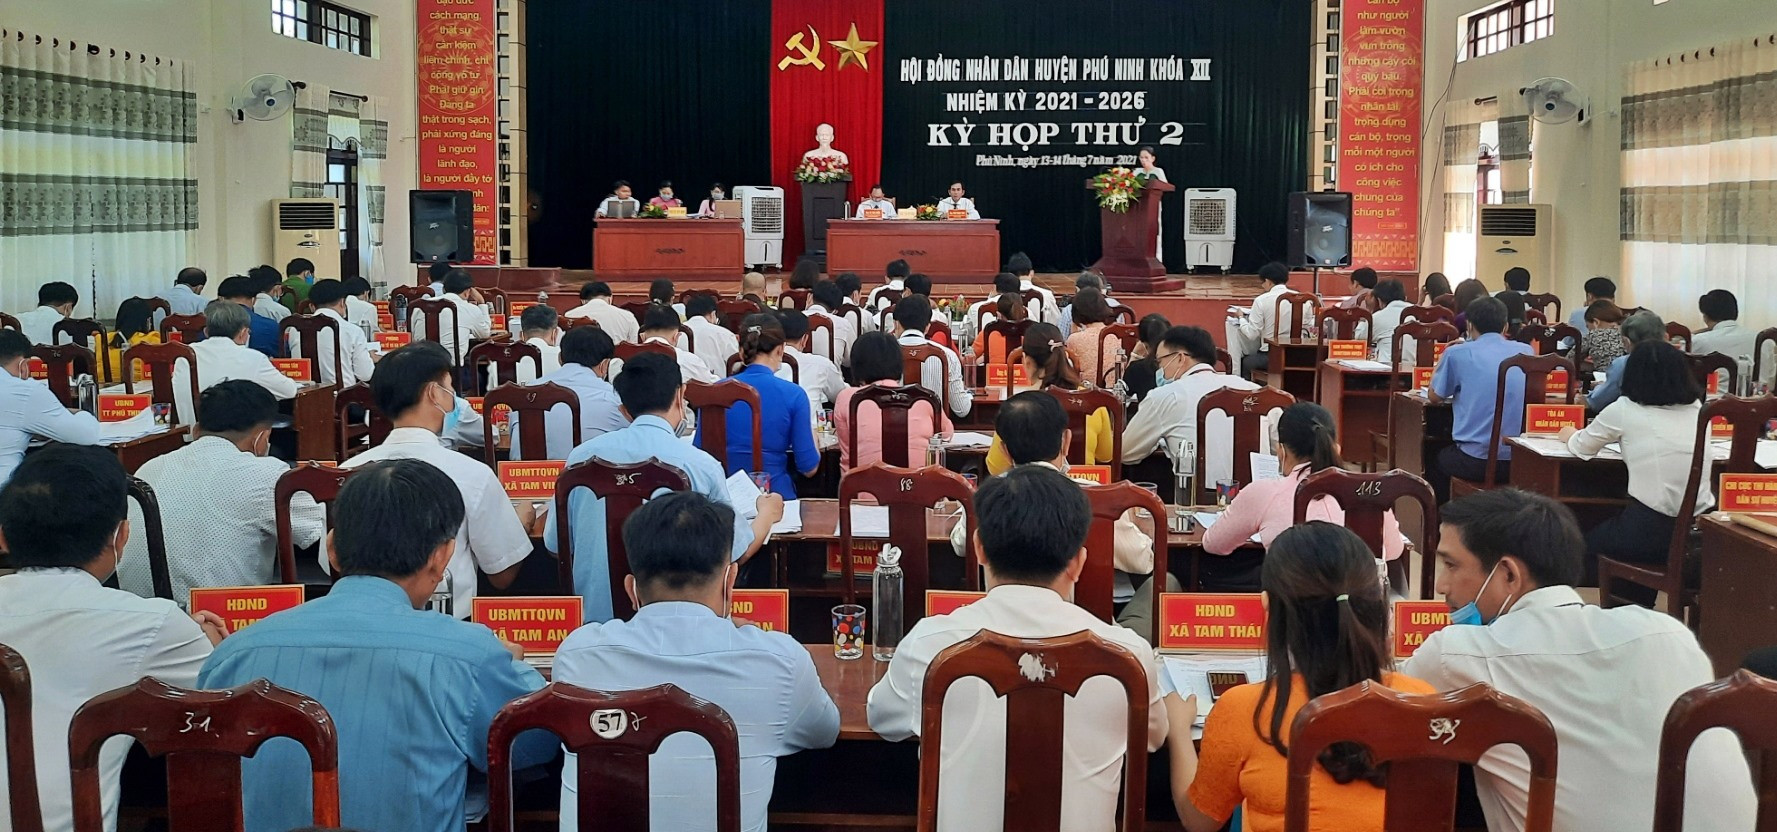 Hoạt động giám sát của Thường trực HĐND huyện Phú Ninh được thực hiện liên tục, chất lượng. Ảnh: Đ.C